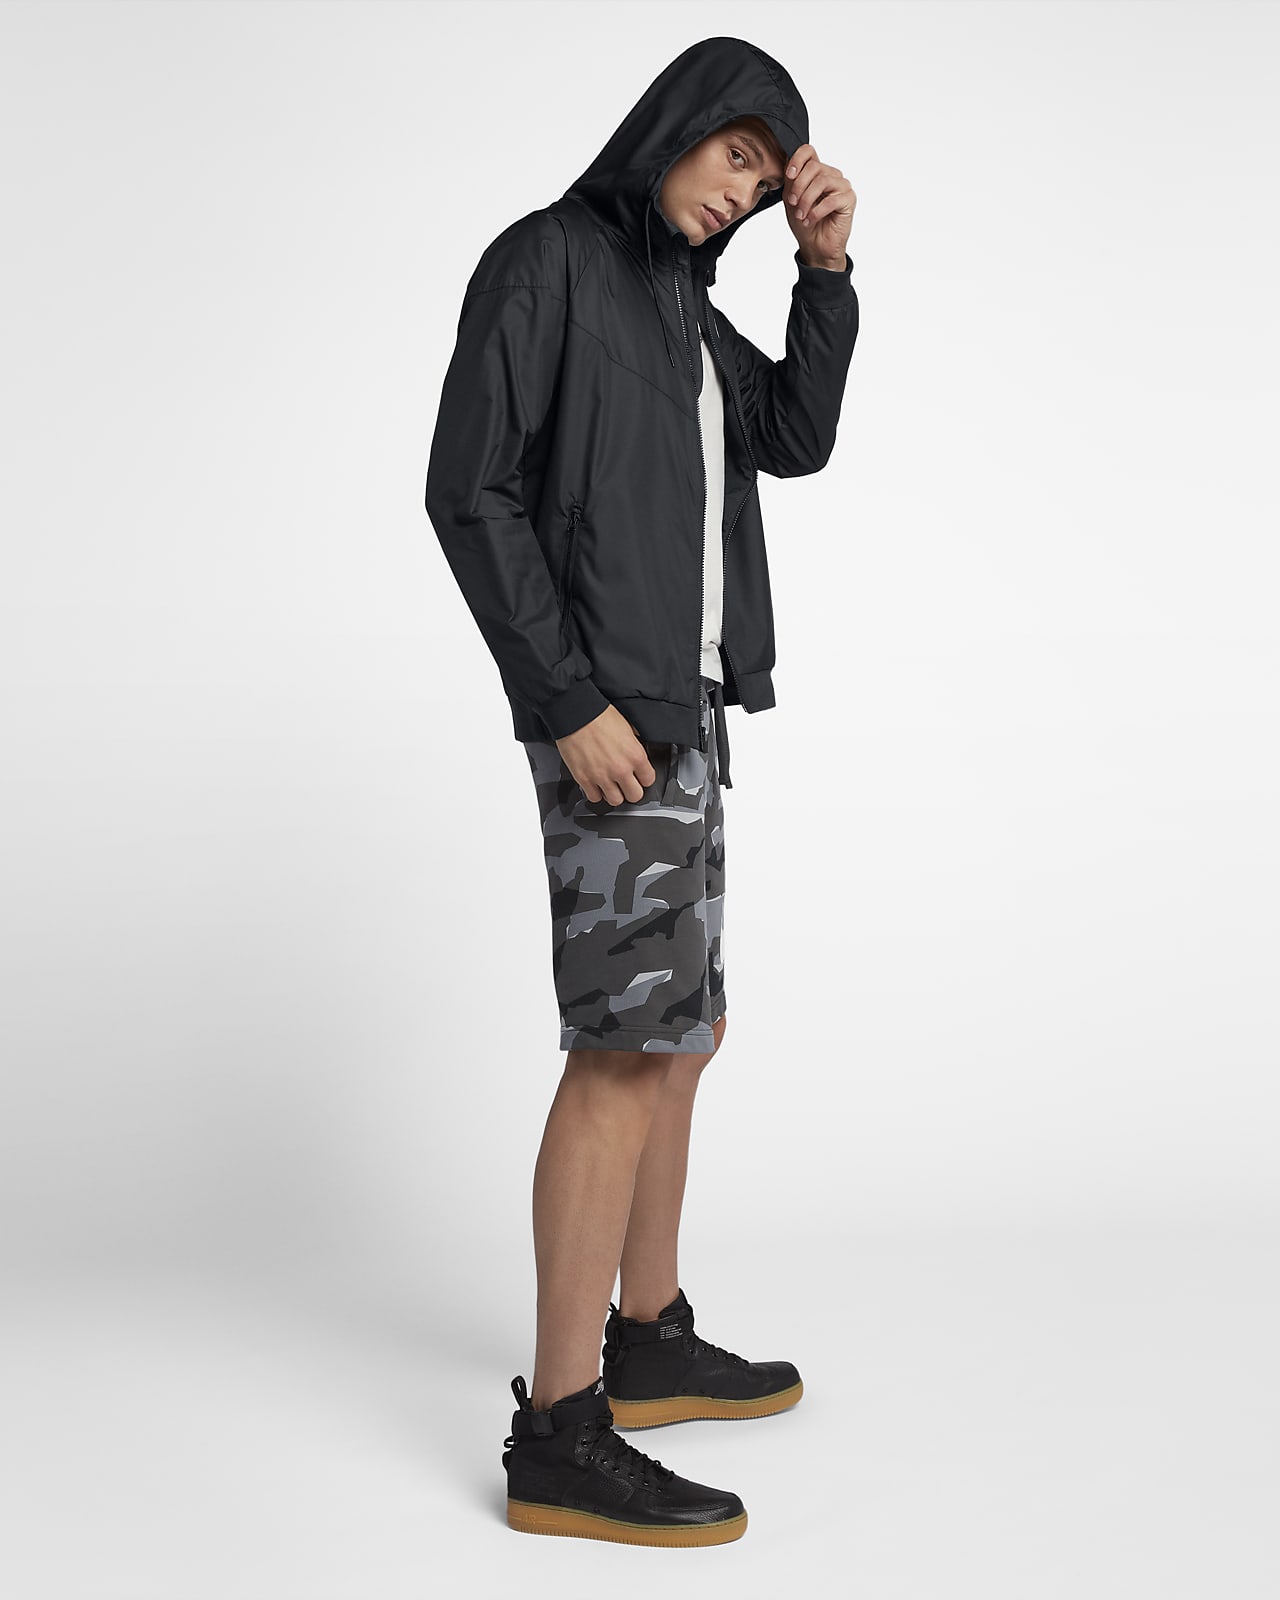 Nike Sportswear Windrunner Men's Jacket.